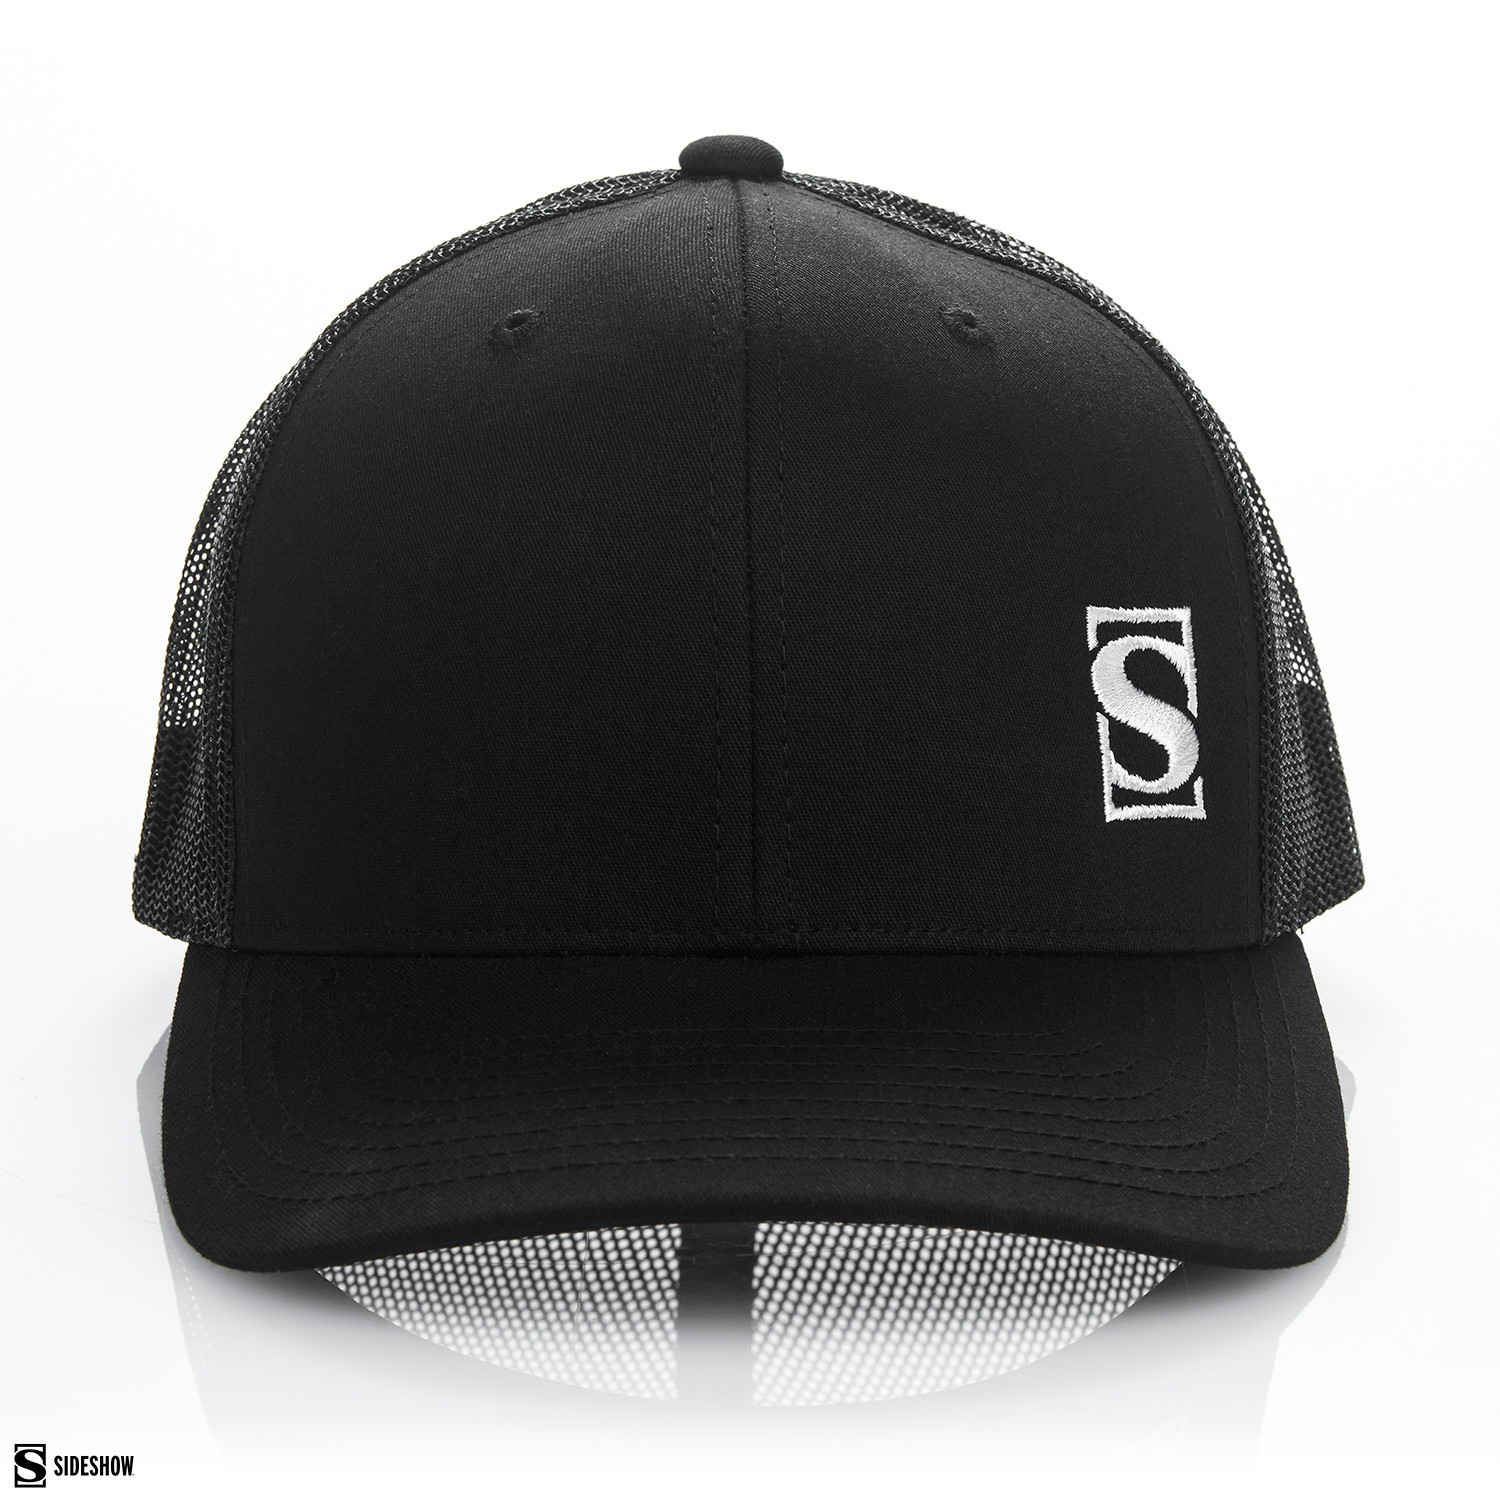 Sideshow Trucker Hat (Black) View 4